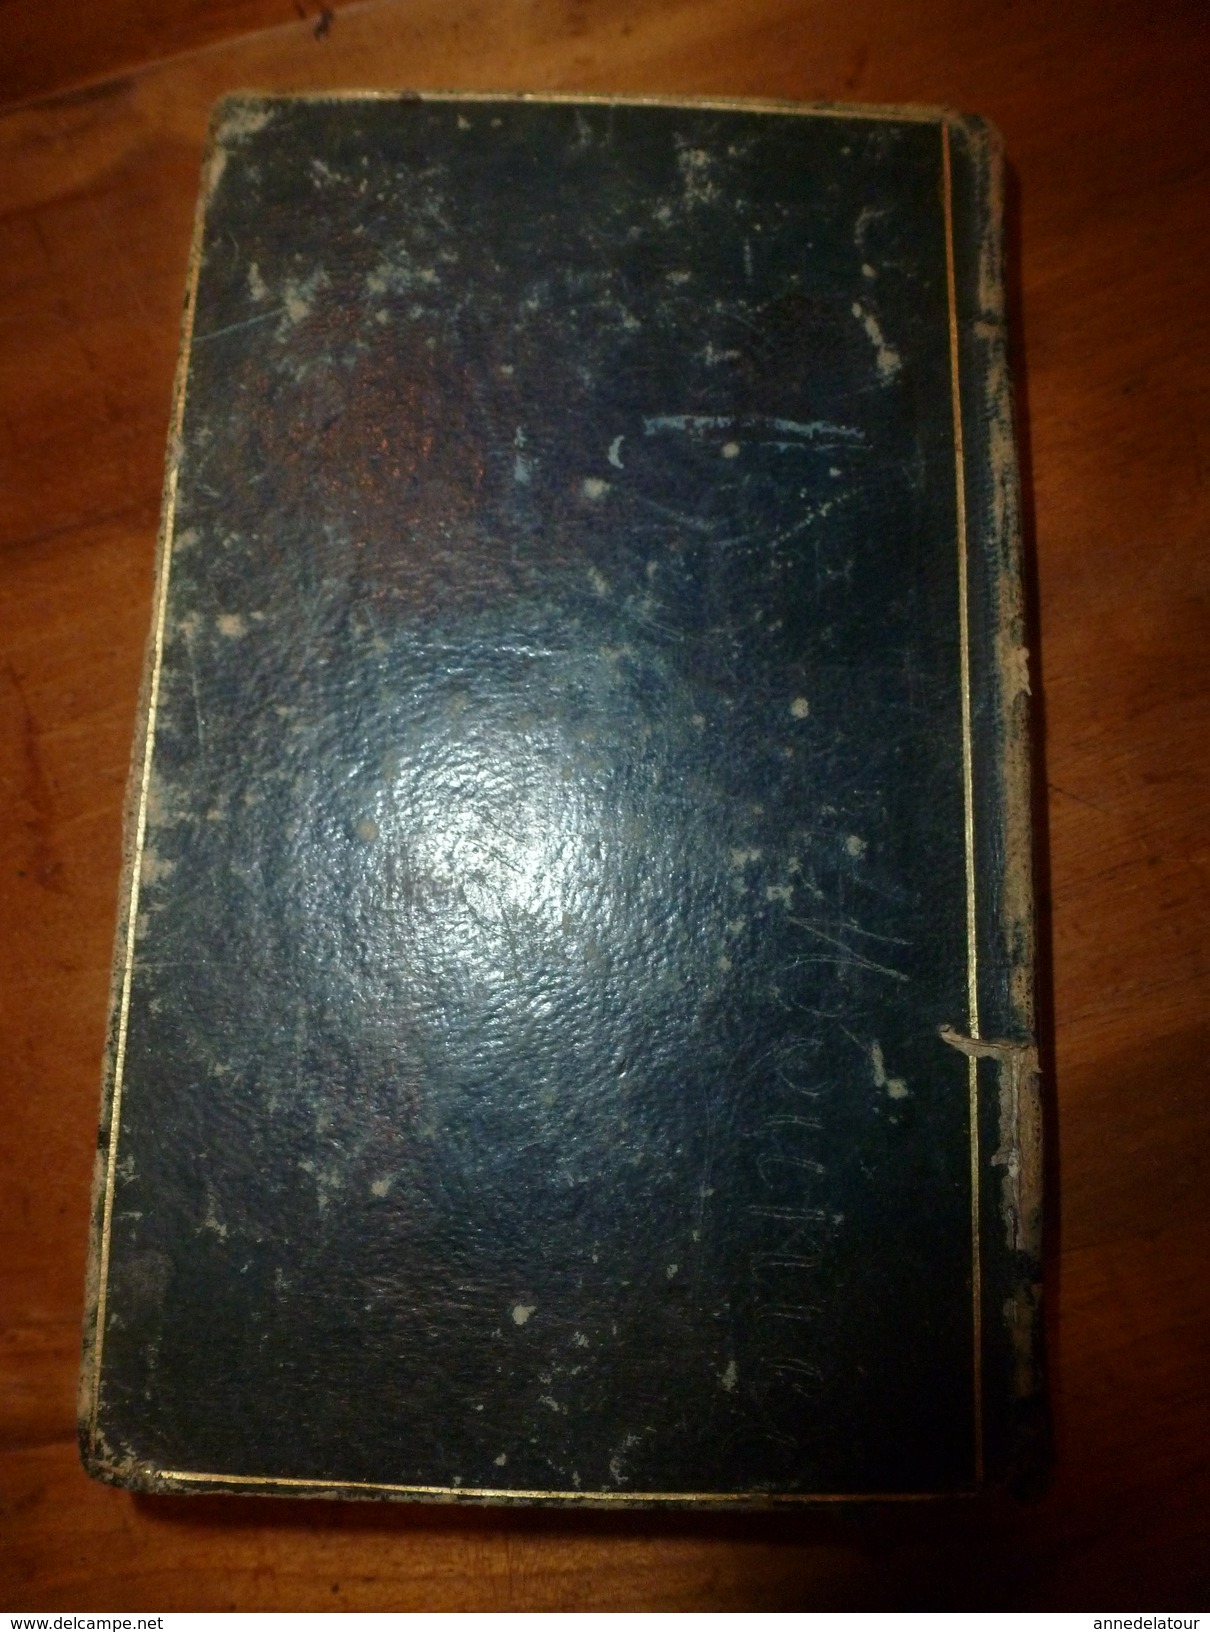 1843 La DECOUVERTE de l'AMERIQUE trad. de l'allemand DE CAMPE par P. C. GERARD (408 p. dont 3 gravures) couverture cuir